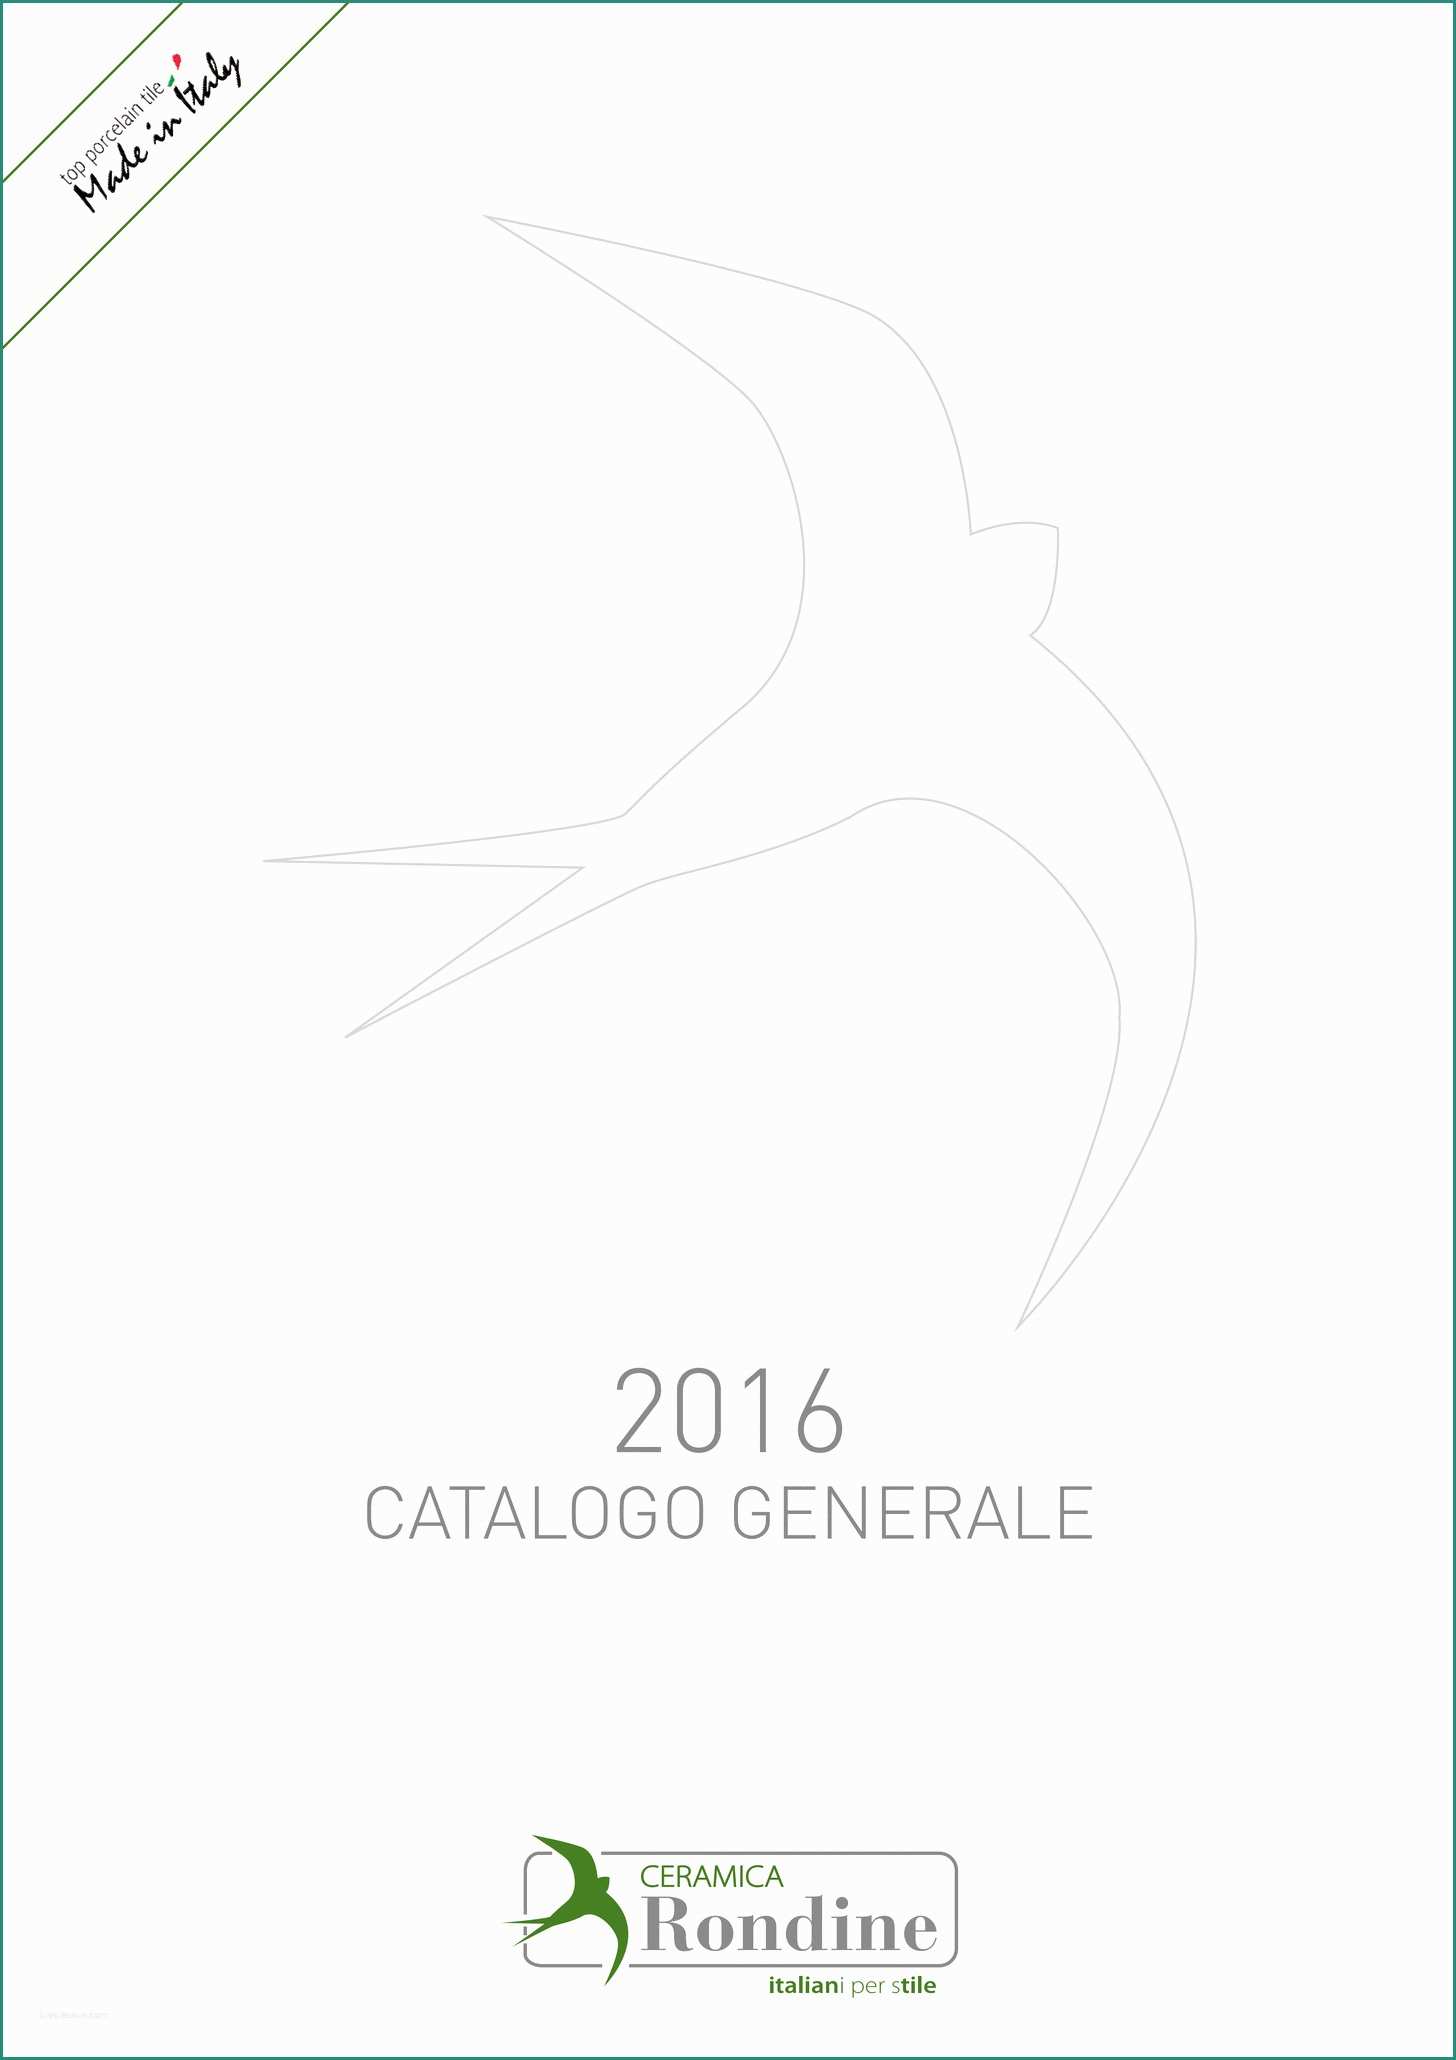 Linkem Disdetta Contratto E Rondine Catalogus 2016